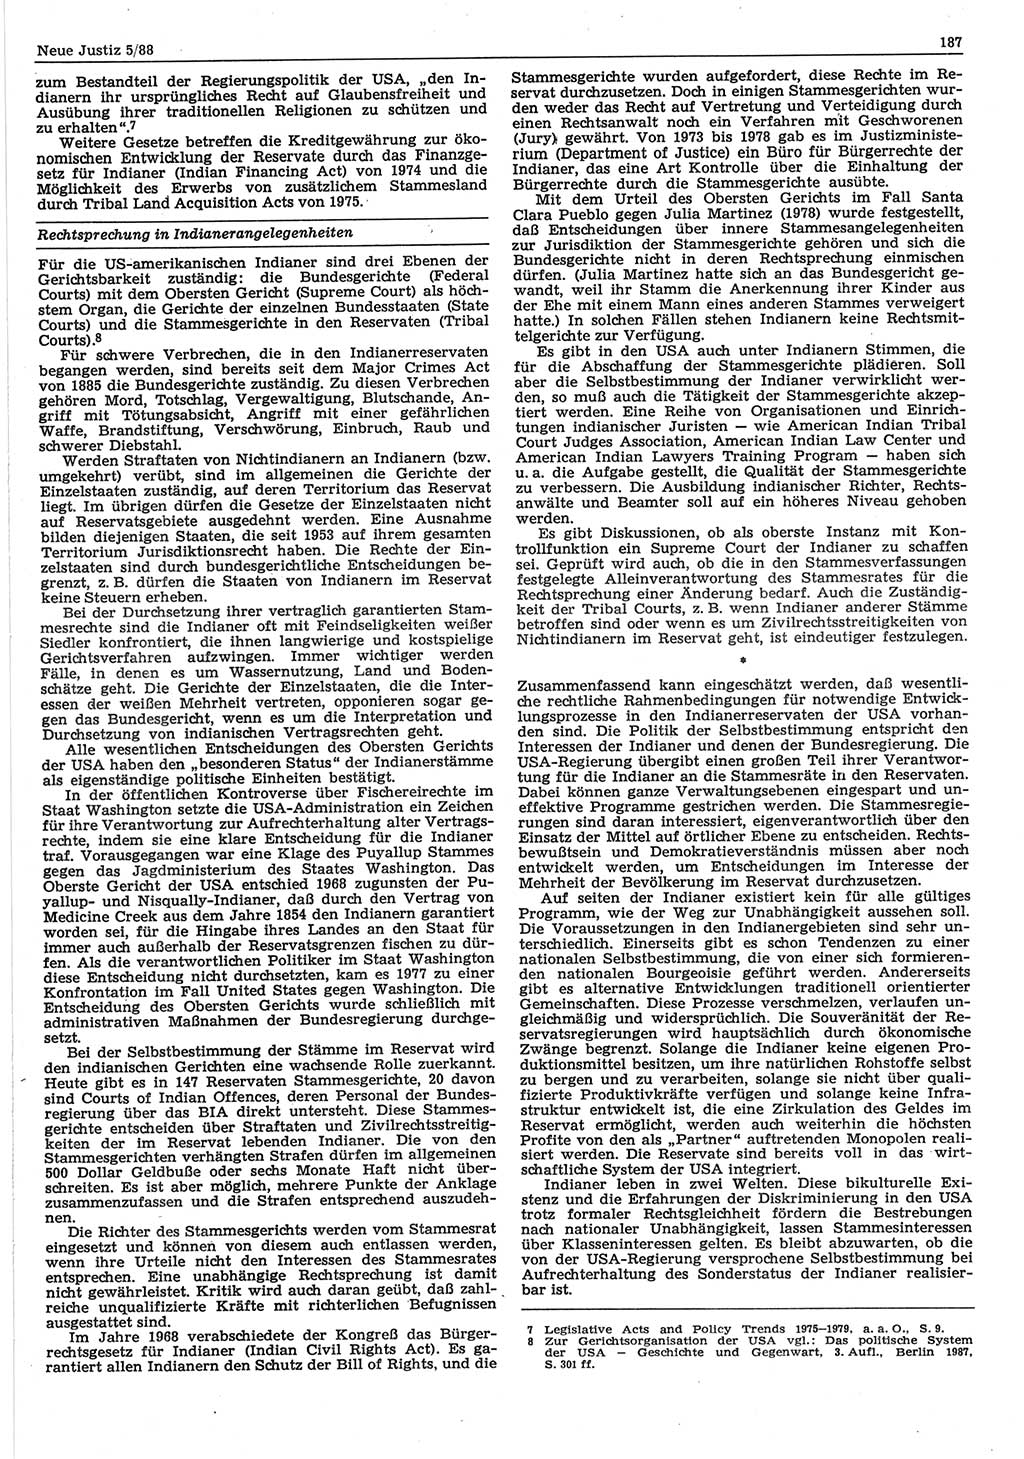 Neue Justiz (NJ), Zeitschrift für sozialistisches Recht und Gesetzlichkeit [Deutsche Demokratische Republik (DDR)], 42. Jahrgang 1988, Seite 187 (NJ DDR 1988, S. 187)